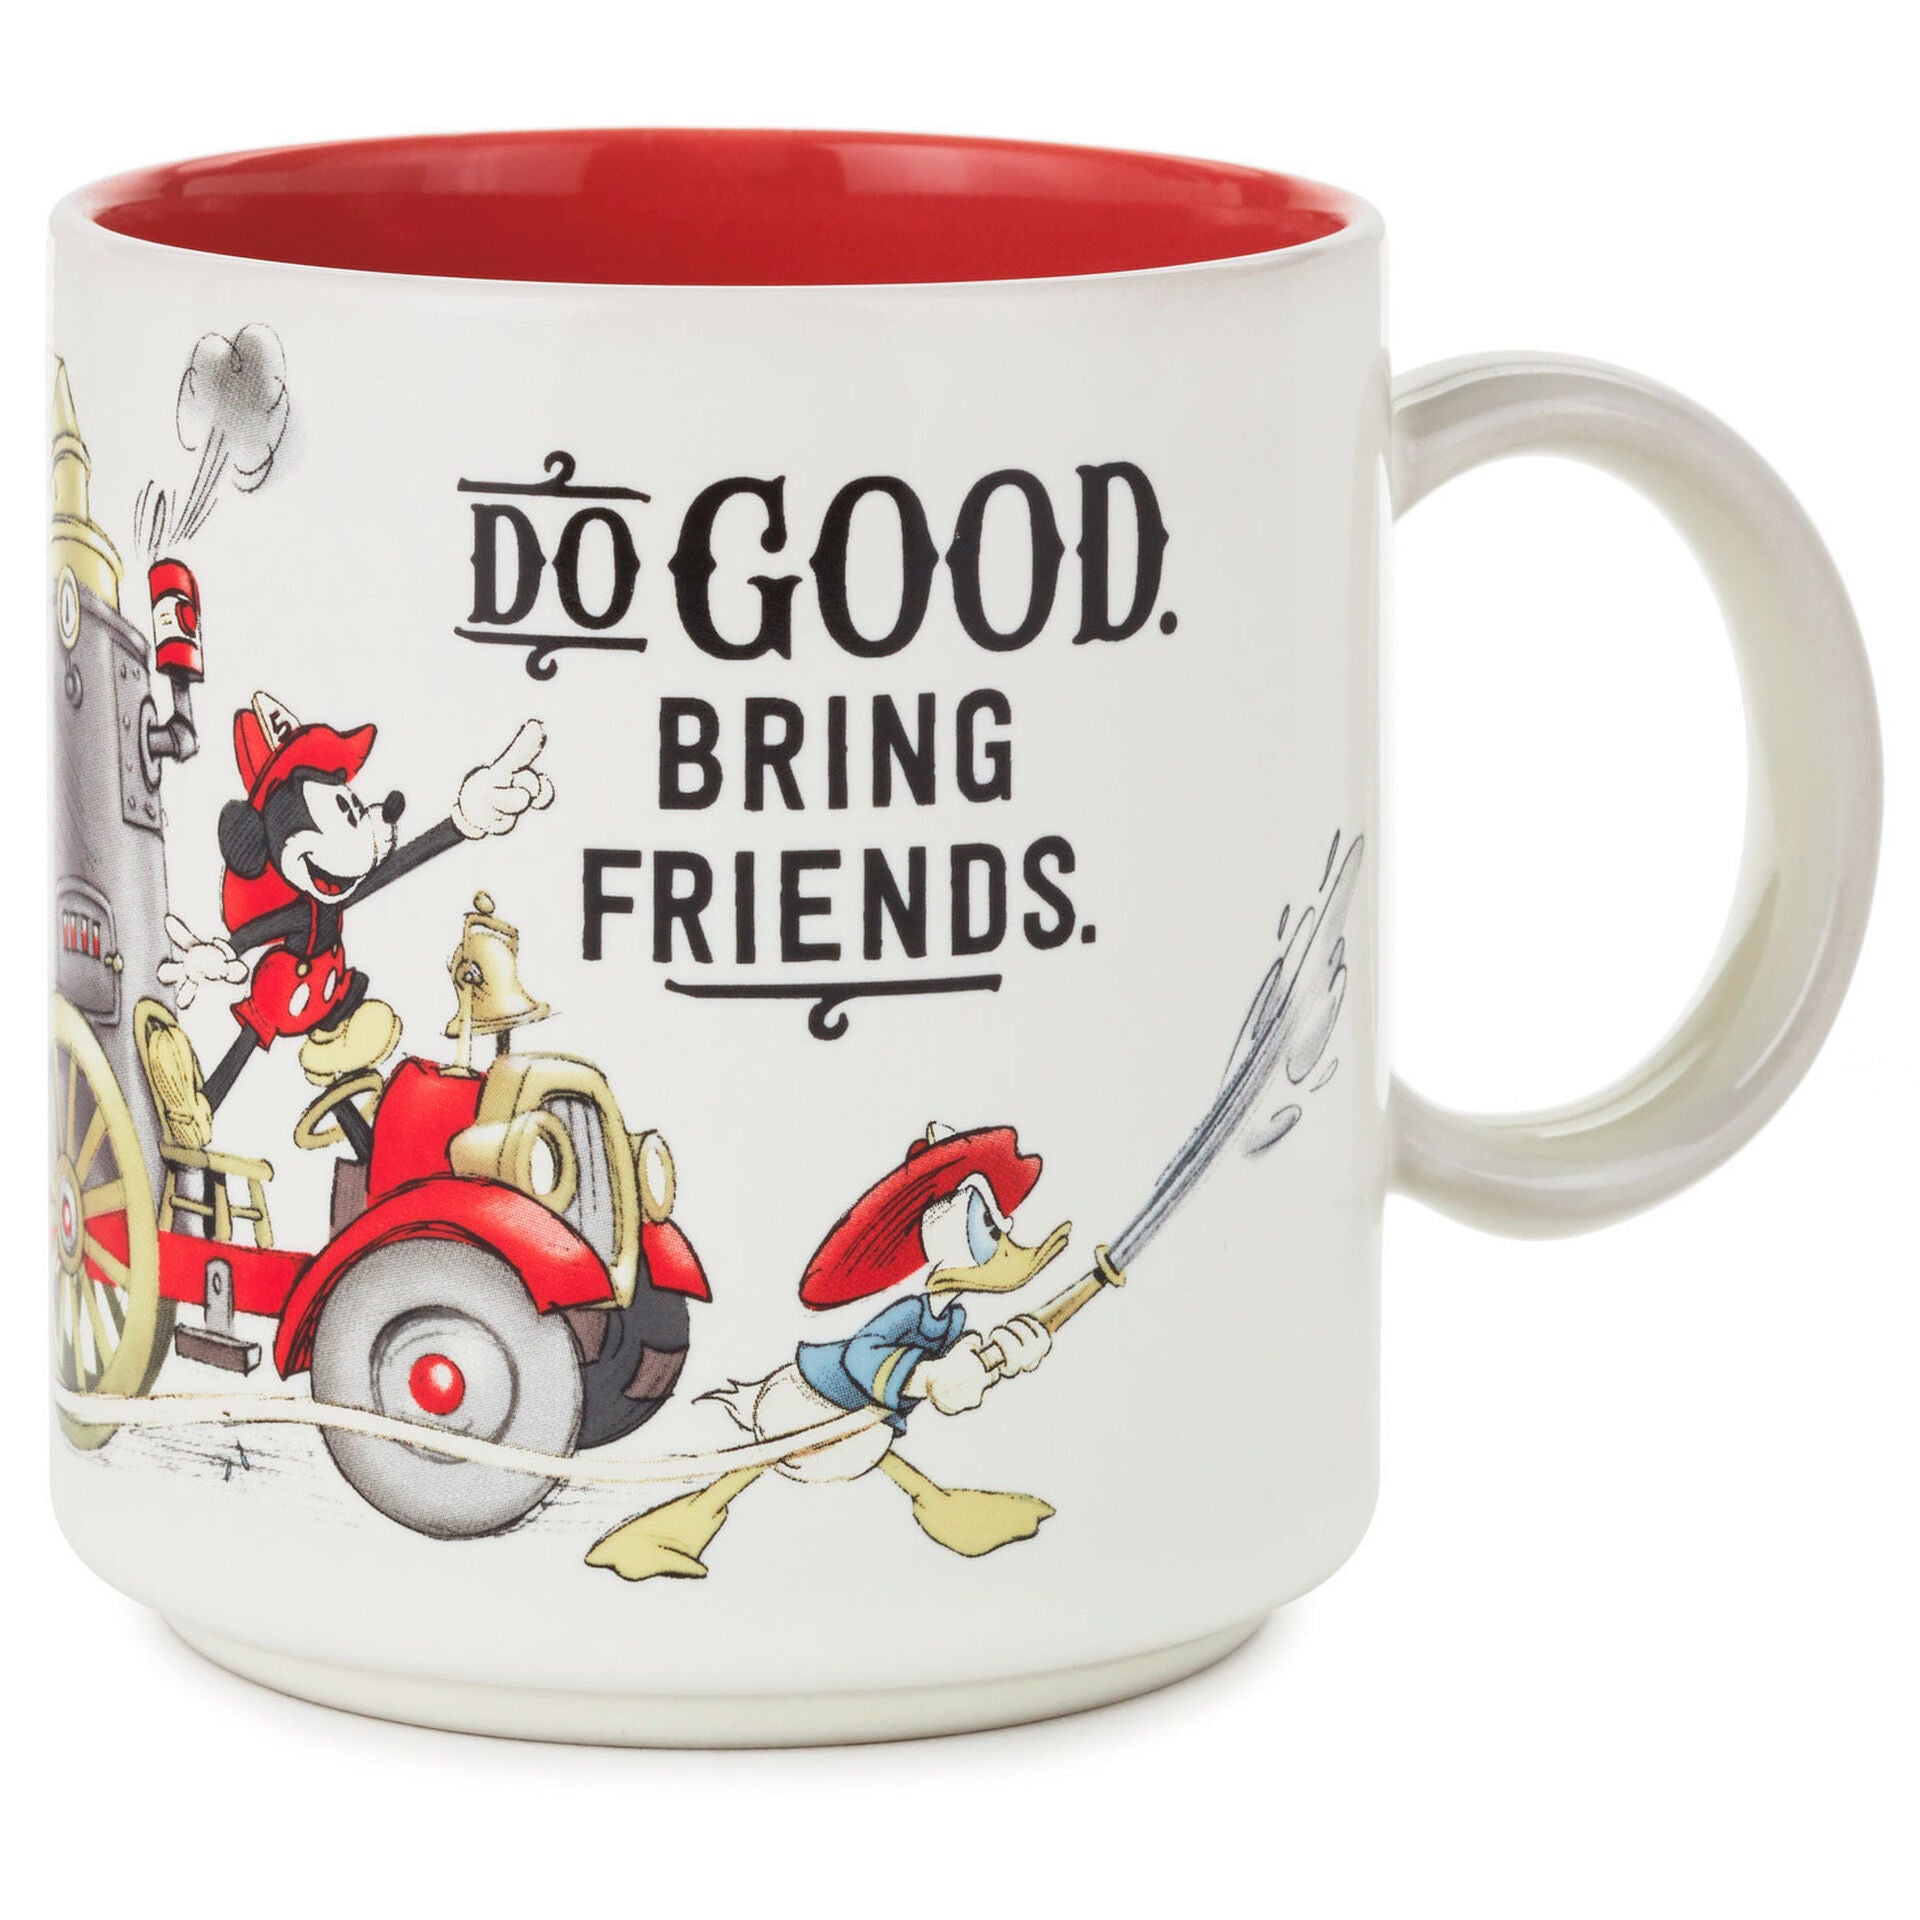 Disney Coffee Mug - Mickey Mouse Mug with Lid